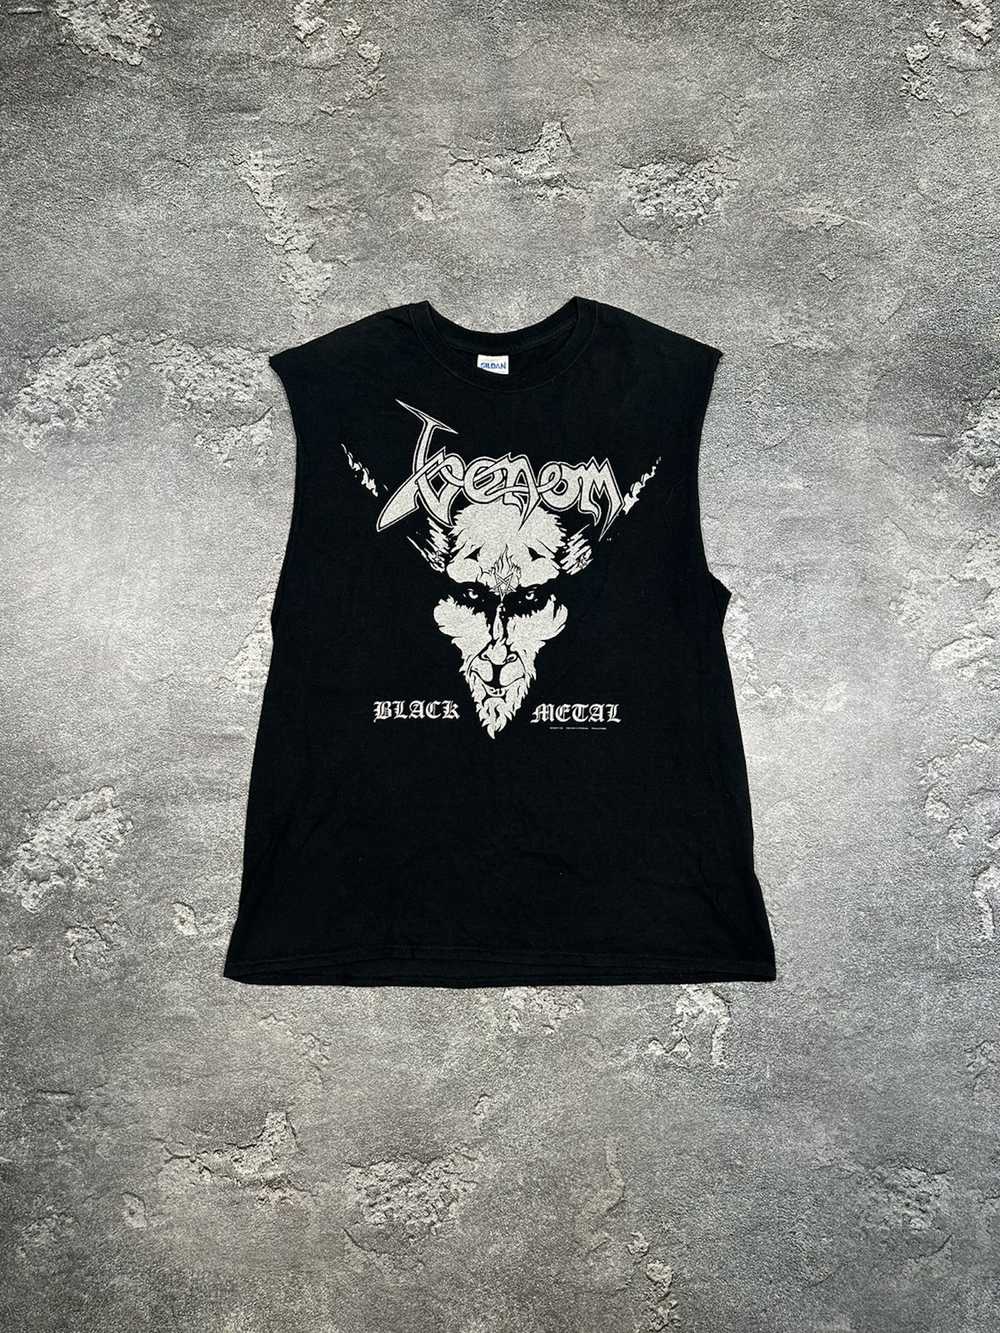 Band Tees × Rock T Shirt × Vintage Venom 90s Blac… - image 1